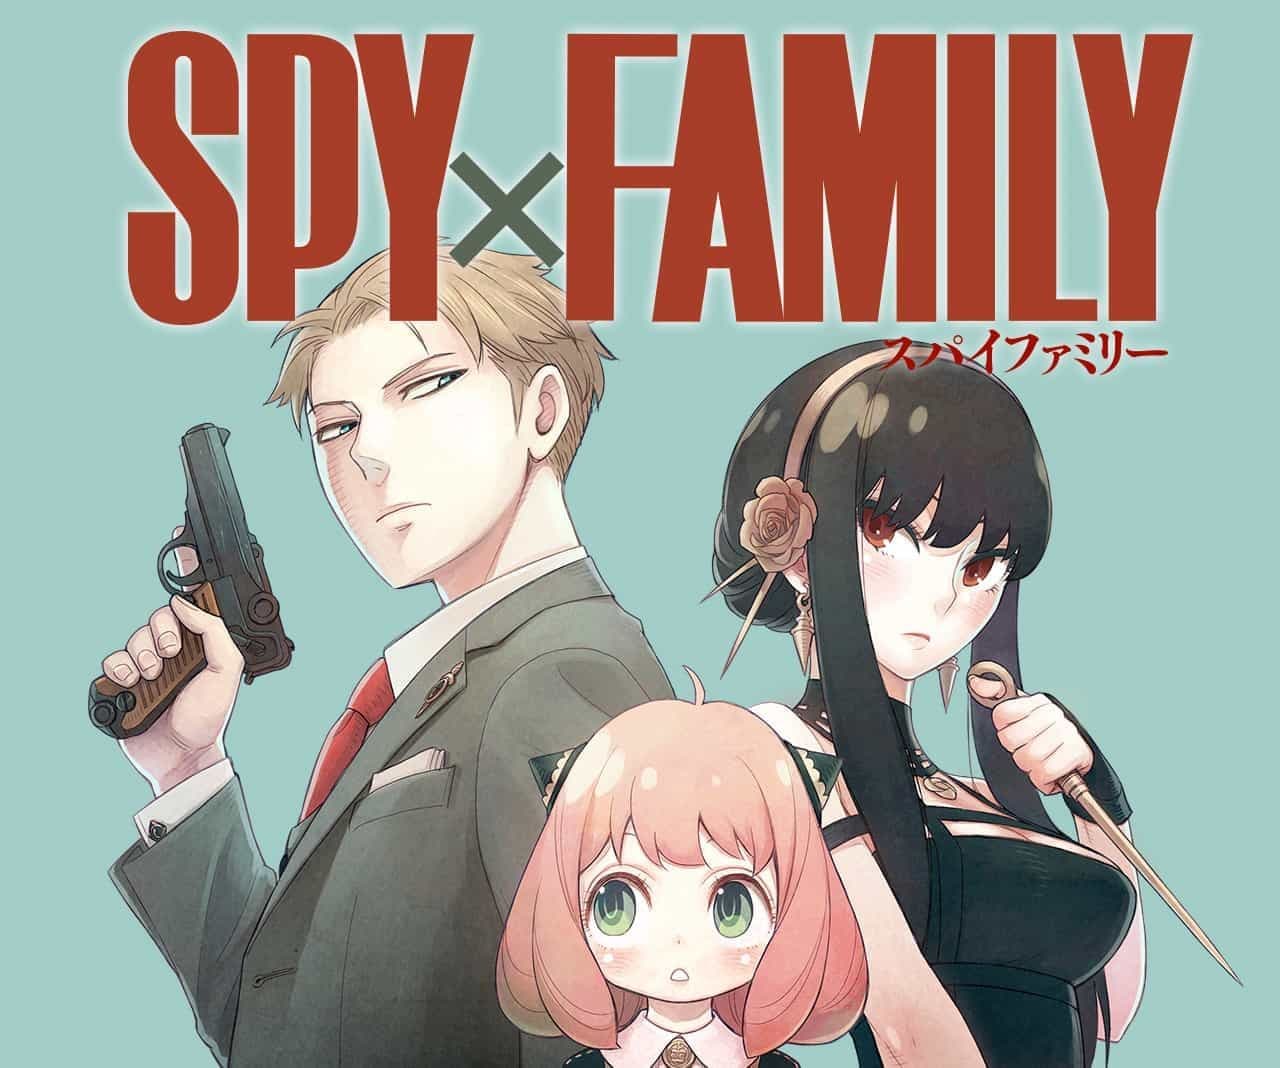 อ่านSpy X Family ตอนที่ 13 Tora manga อ่านโดจินออนไลน์ มังงะ มังฮวา